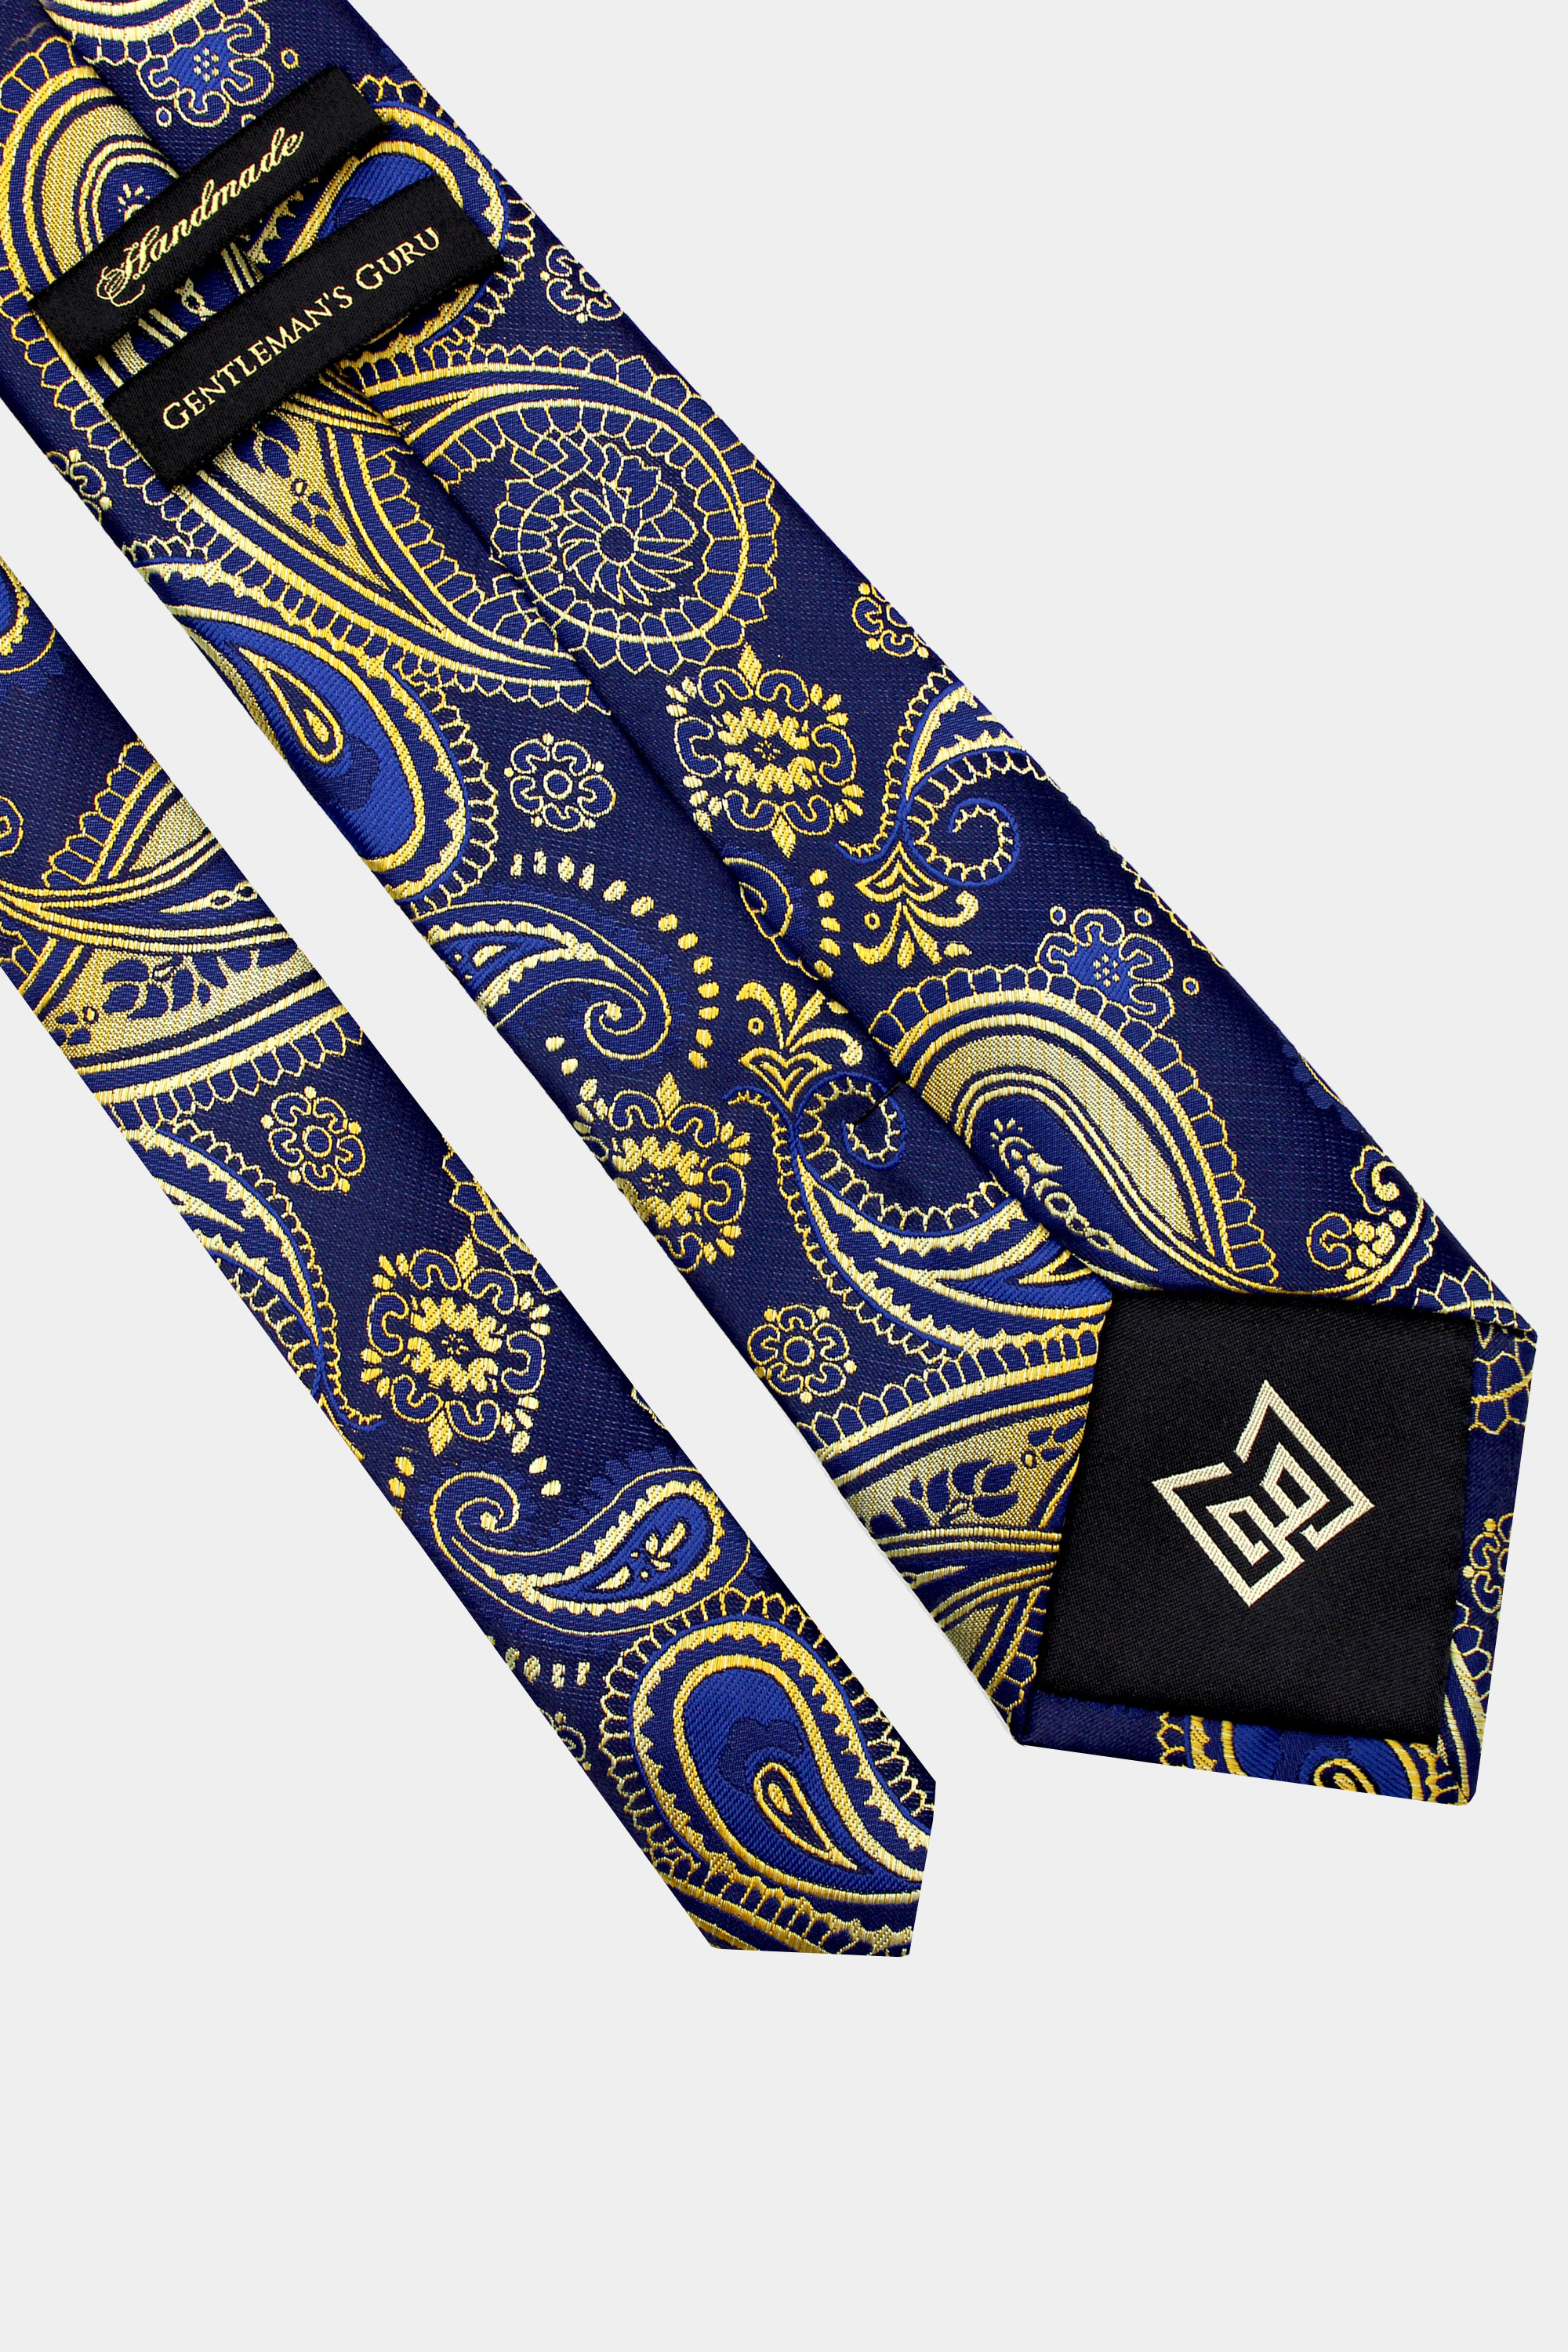 Navy-Blue-and-Gold-Paisley-Necktie-from-Gentlemansguru.com